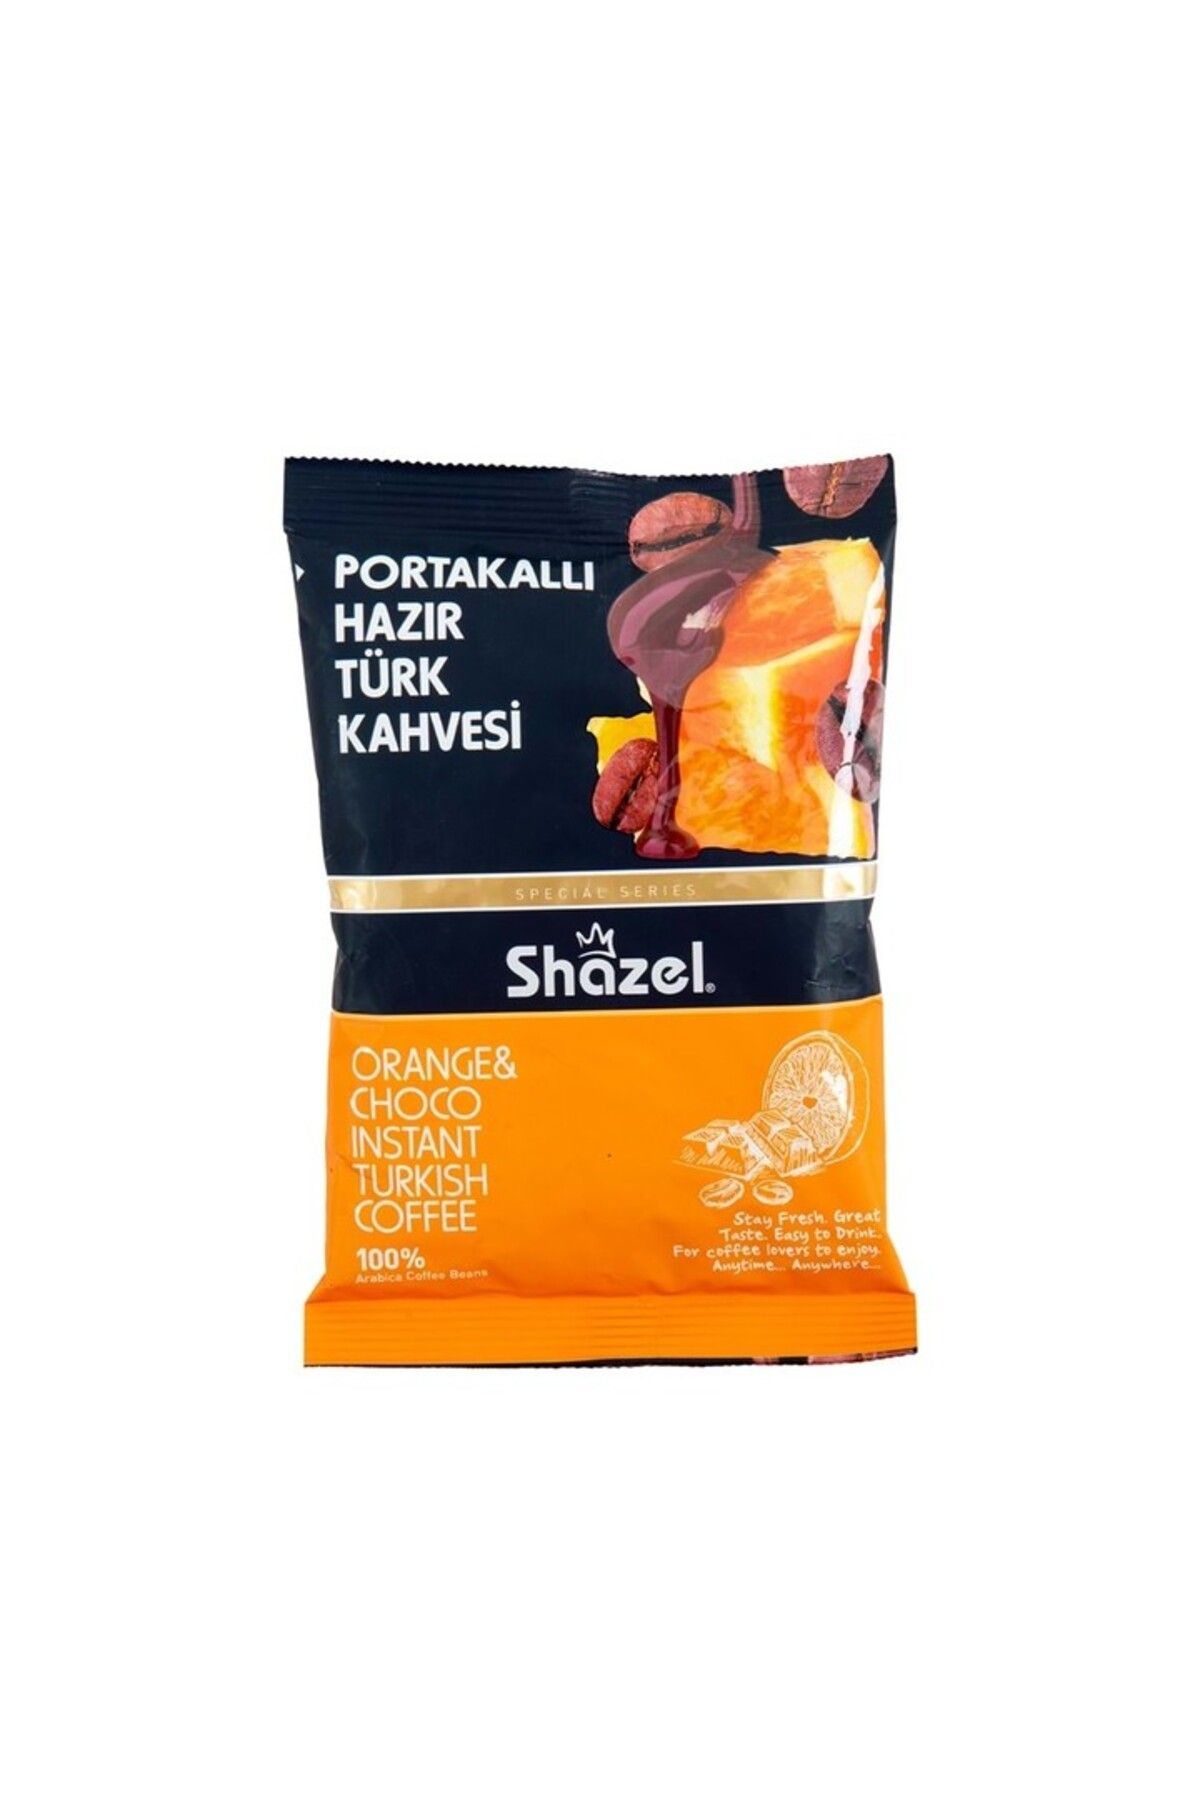 Shazel Portakallı Hazır Türk Kahvesi 100 gr (AROMALI)